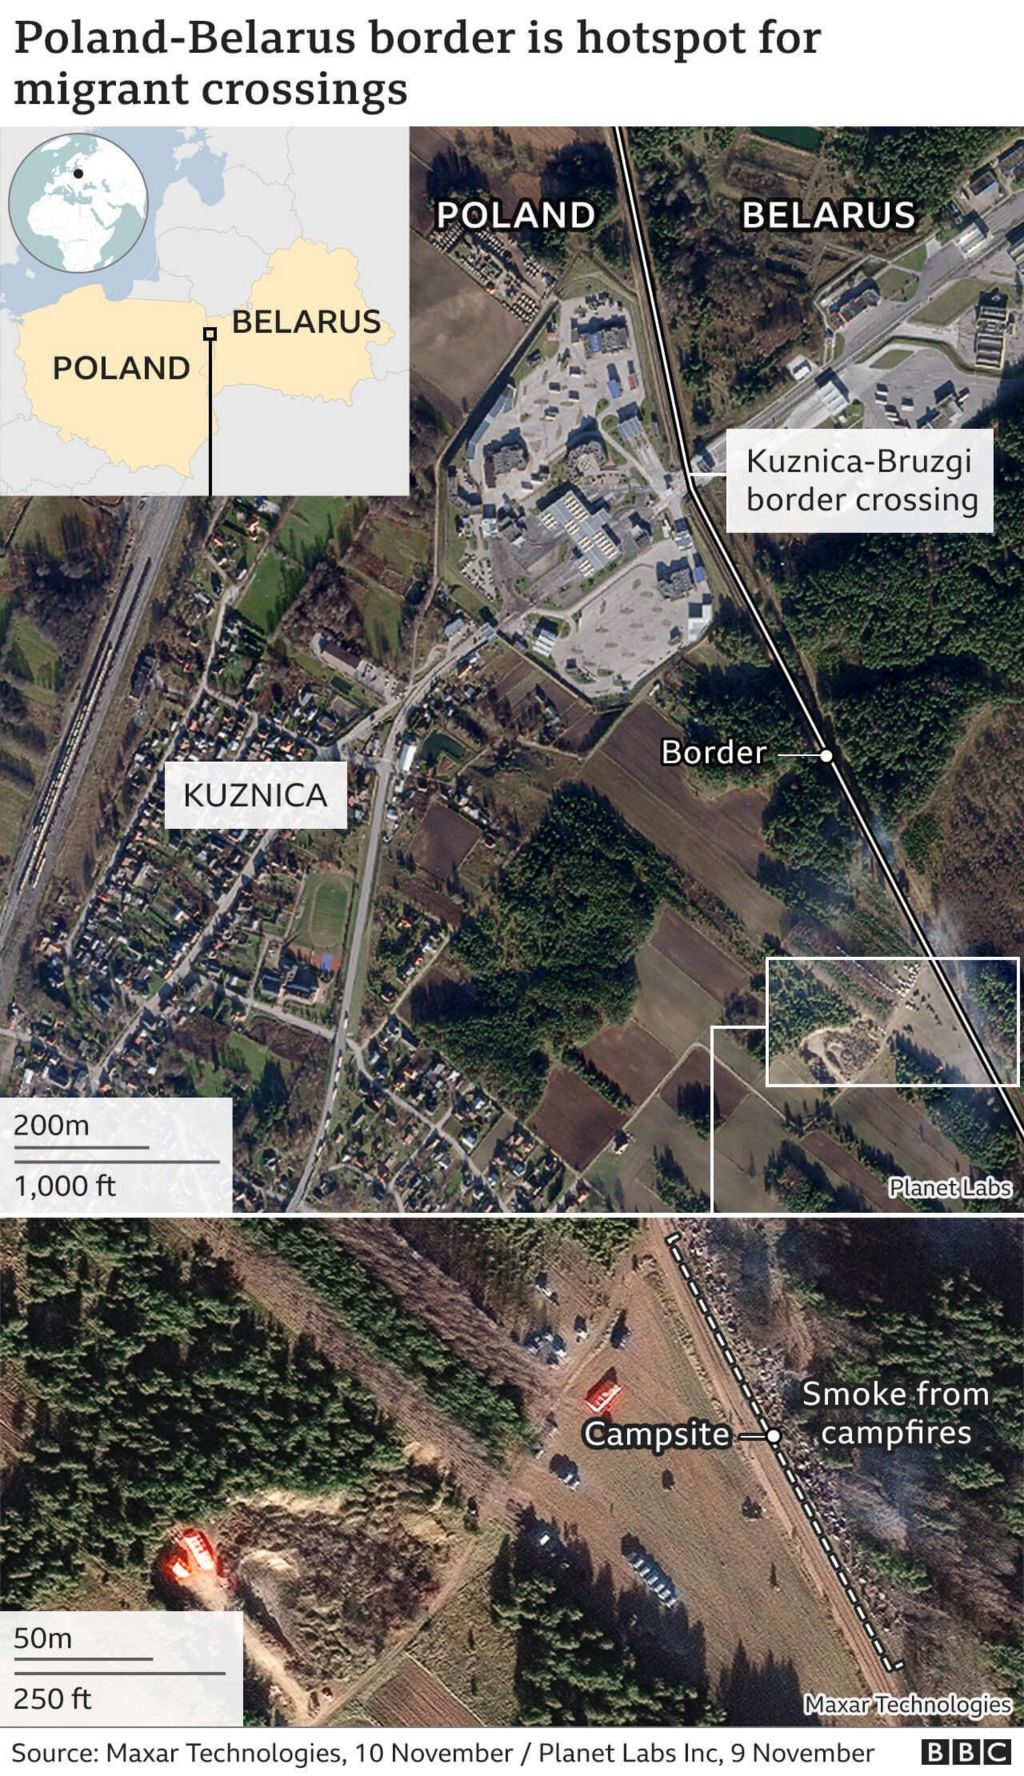 Image shows hi-res satellite images on Belarus border